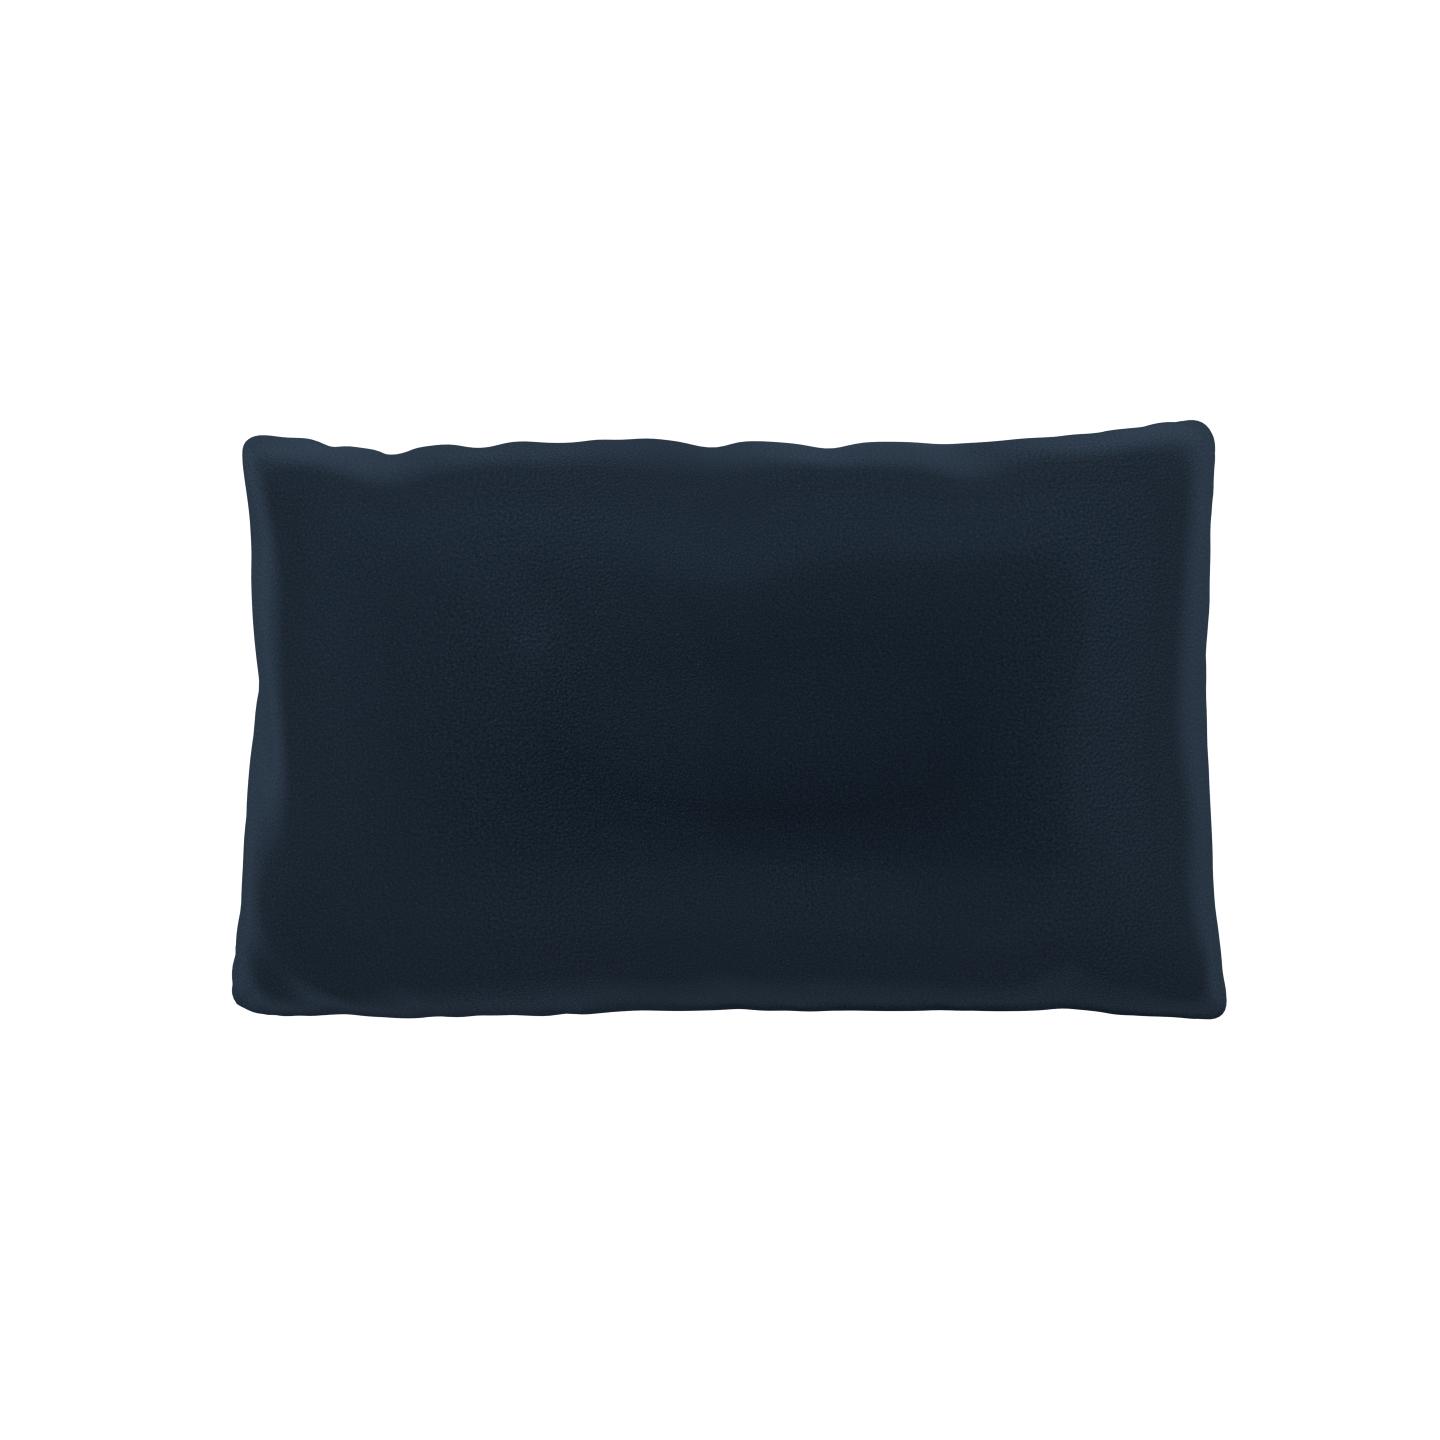 MYCS Coussin Bleu Nuit - 30x50 cm - Housse en Velours. Coussin de canapé moelleux